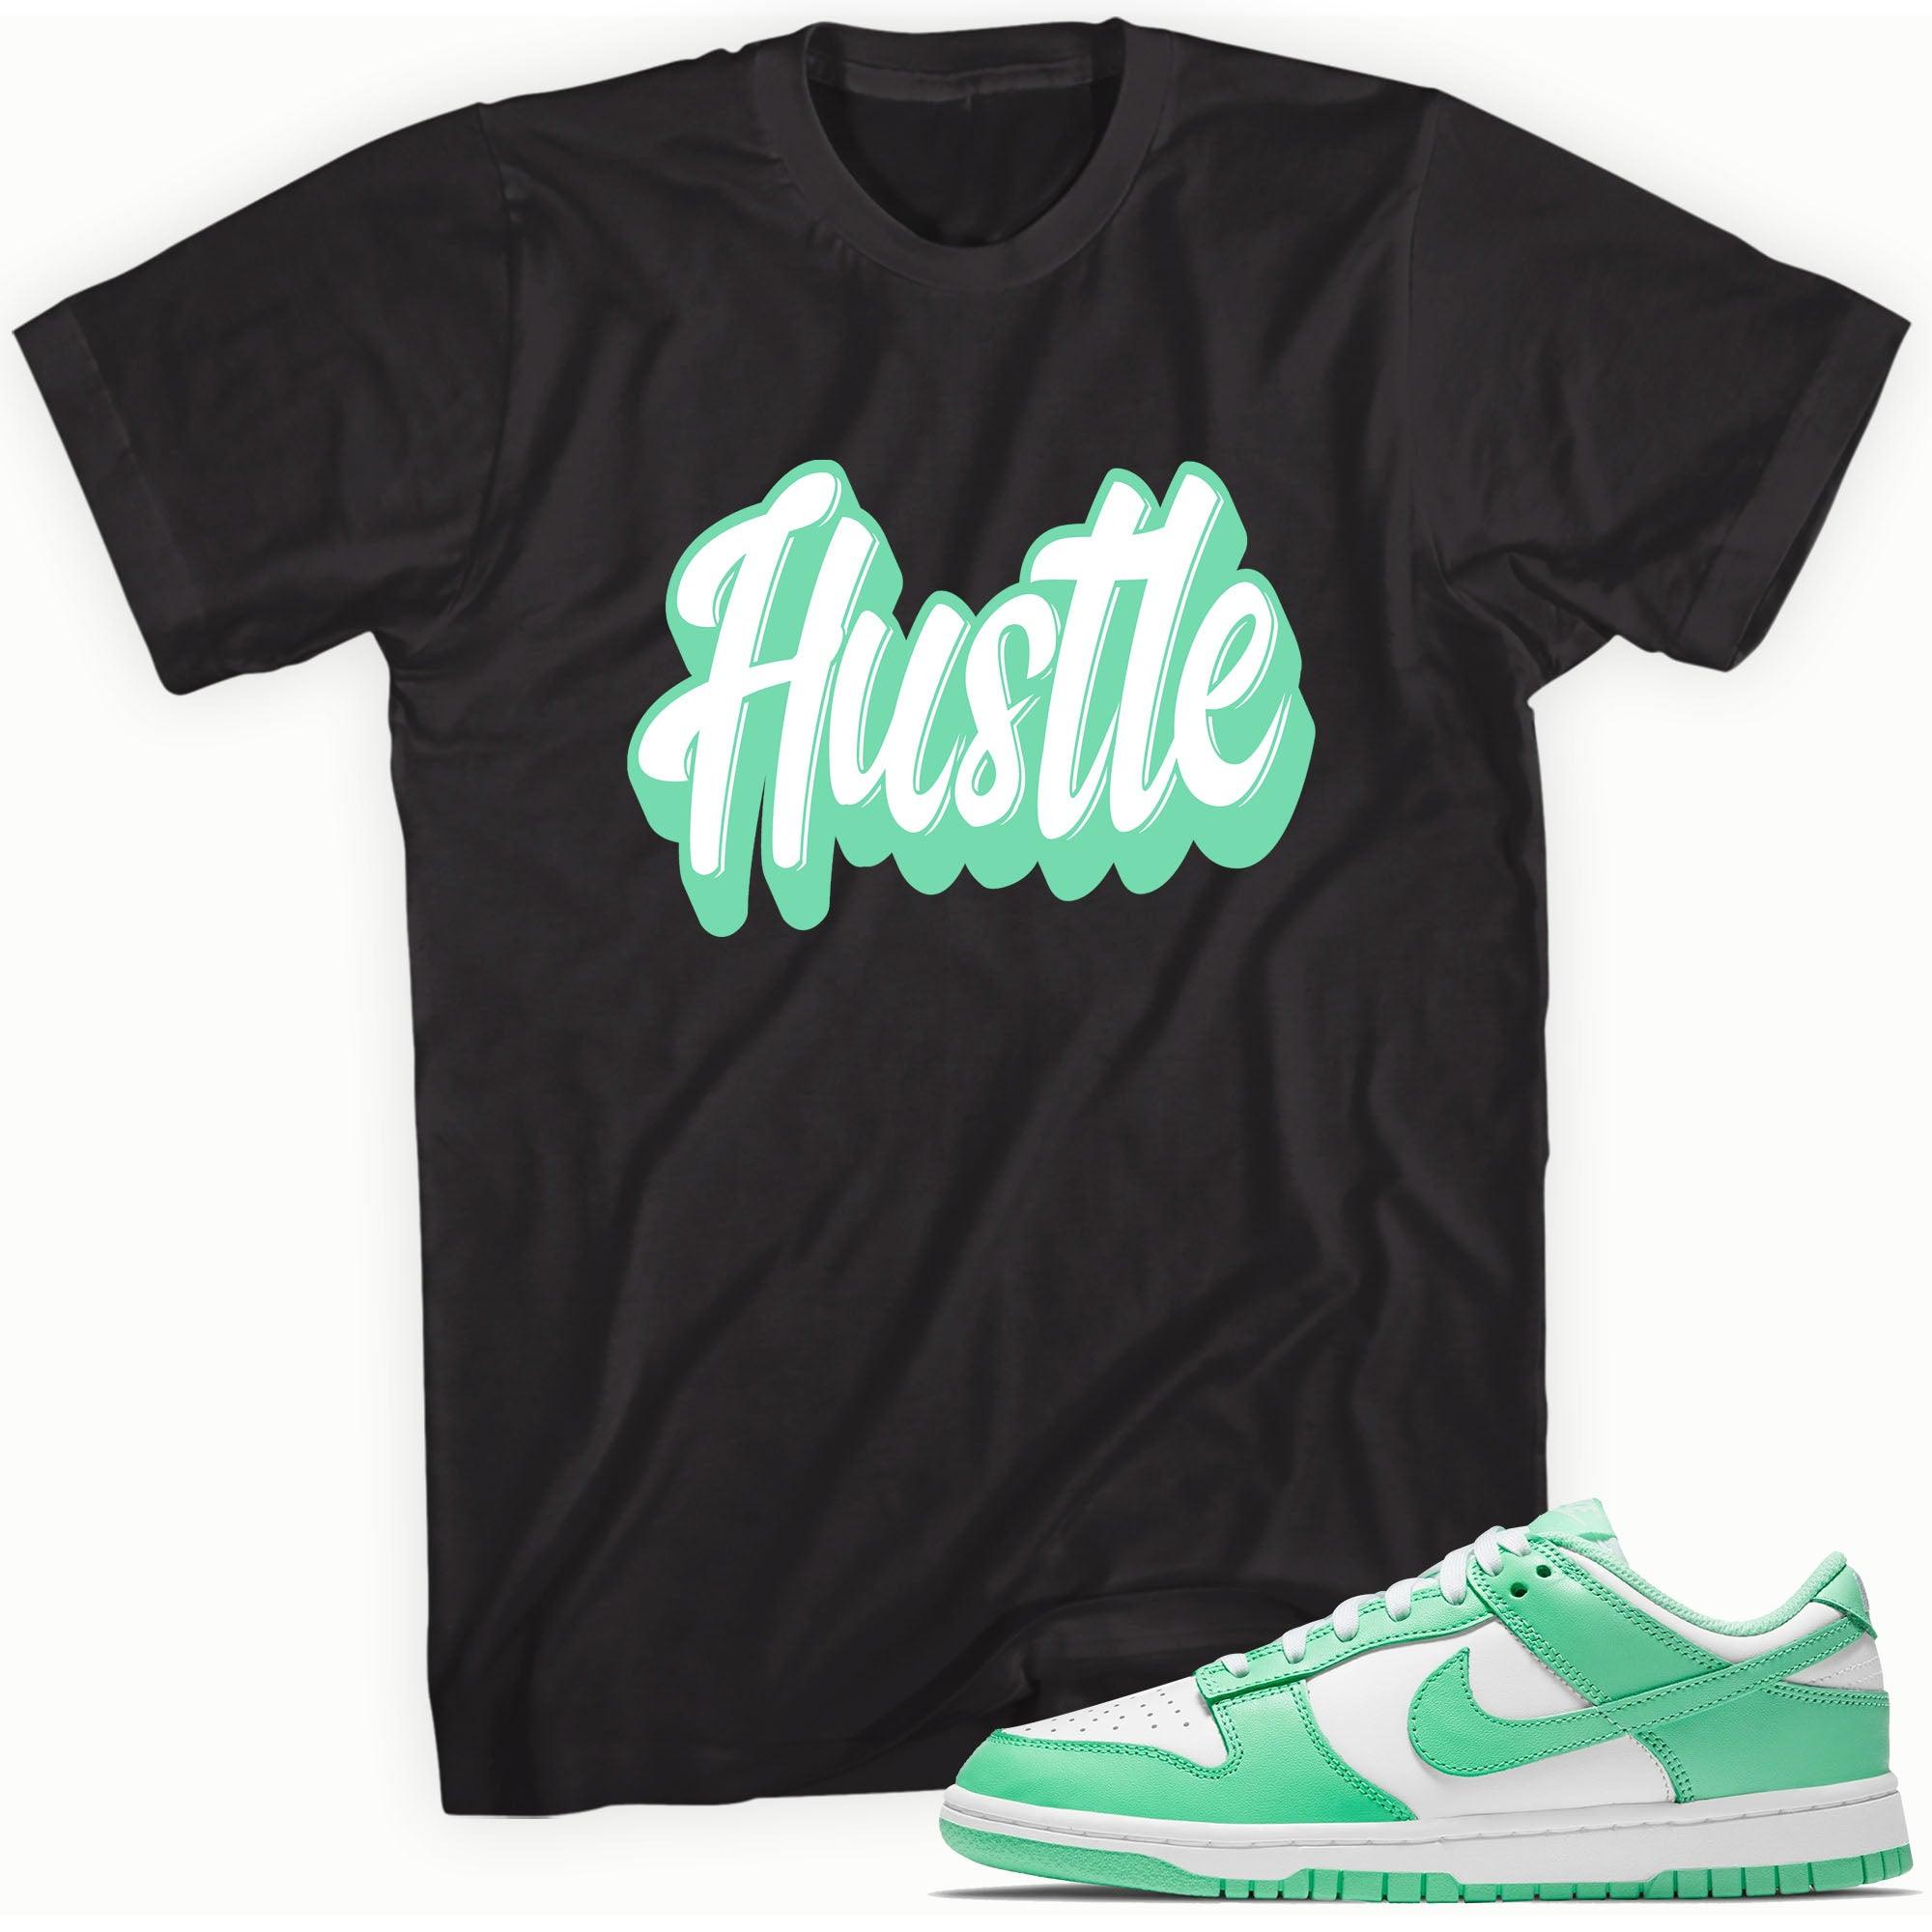 Hustle Shirt Nike Dunks Low Green Glow photo